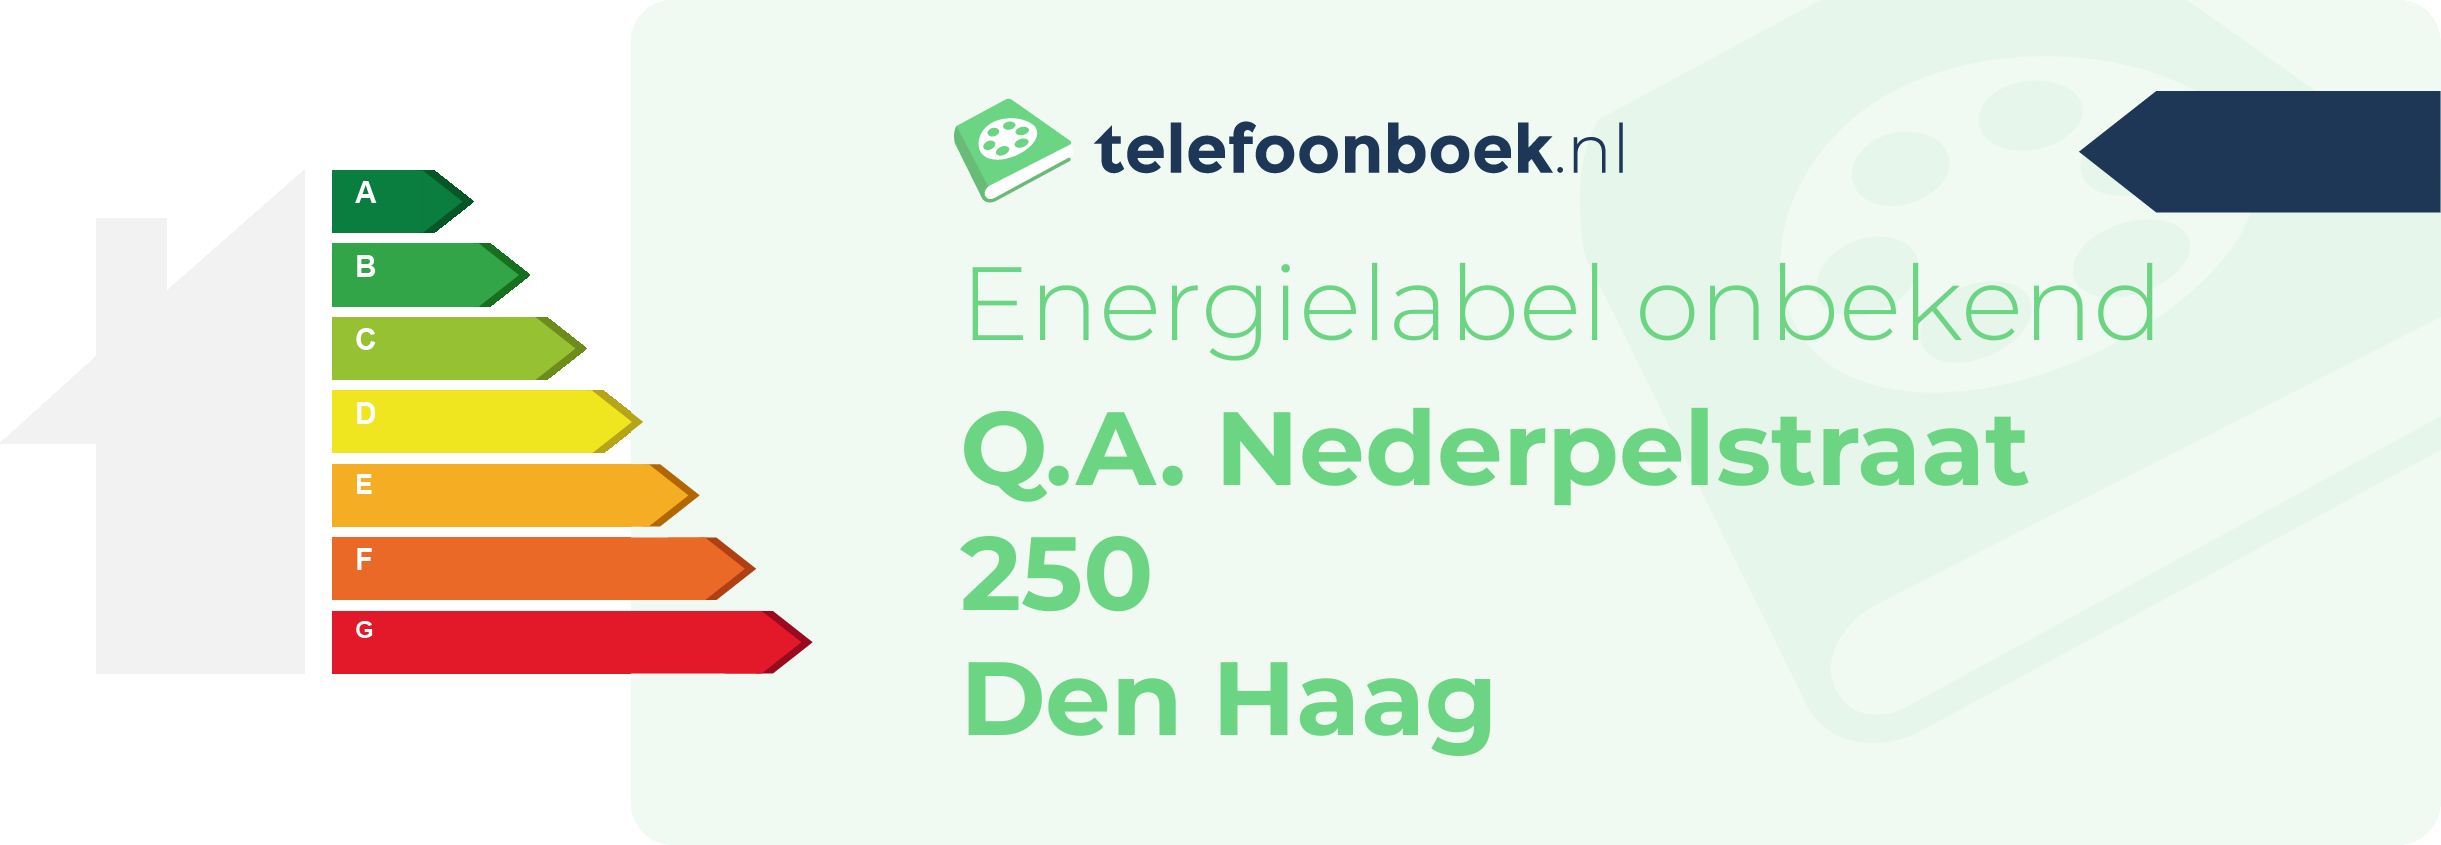 Energielabel Q.A. Nederpelstraat 250 Den Haag